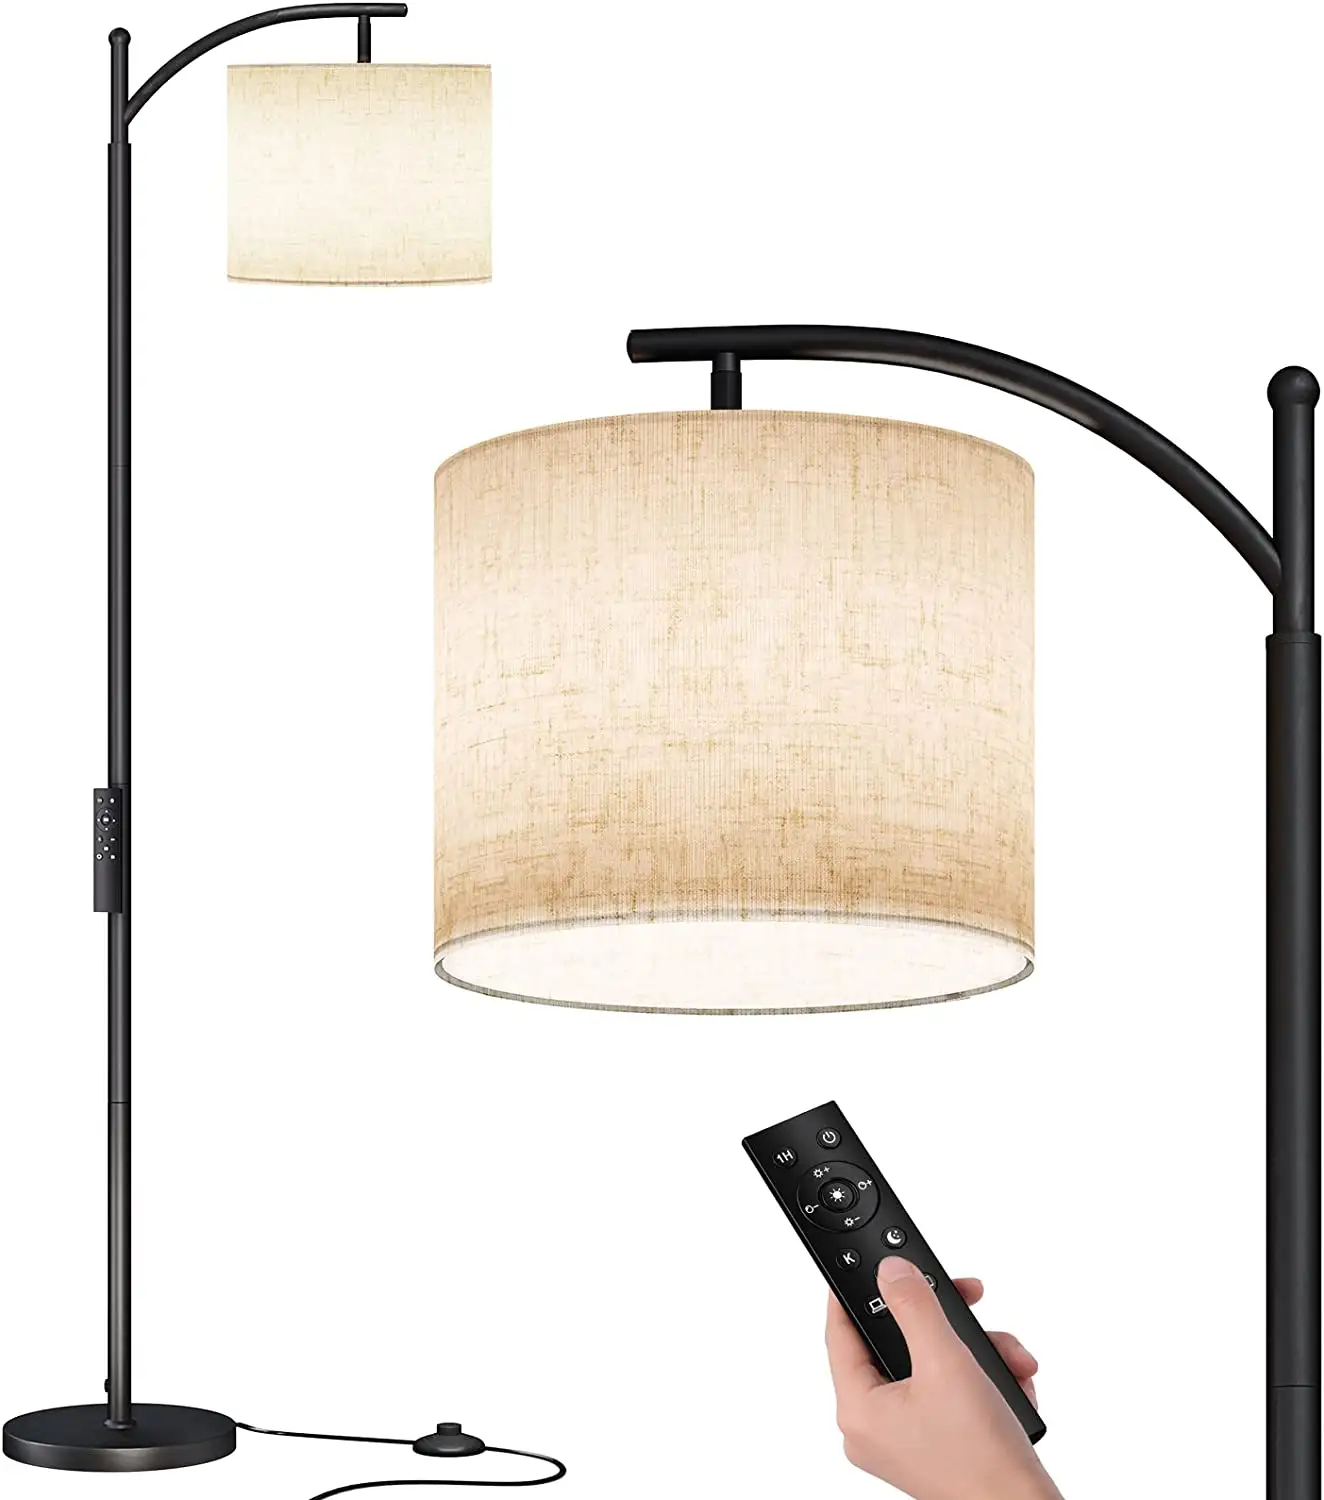 Lâmpada de chão para sala de estar com 3 temperaturas de cor 9W lâmpada LED abajur bege inclui lâmpada de chão alta